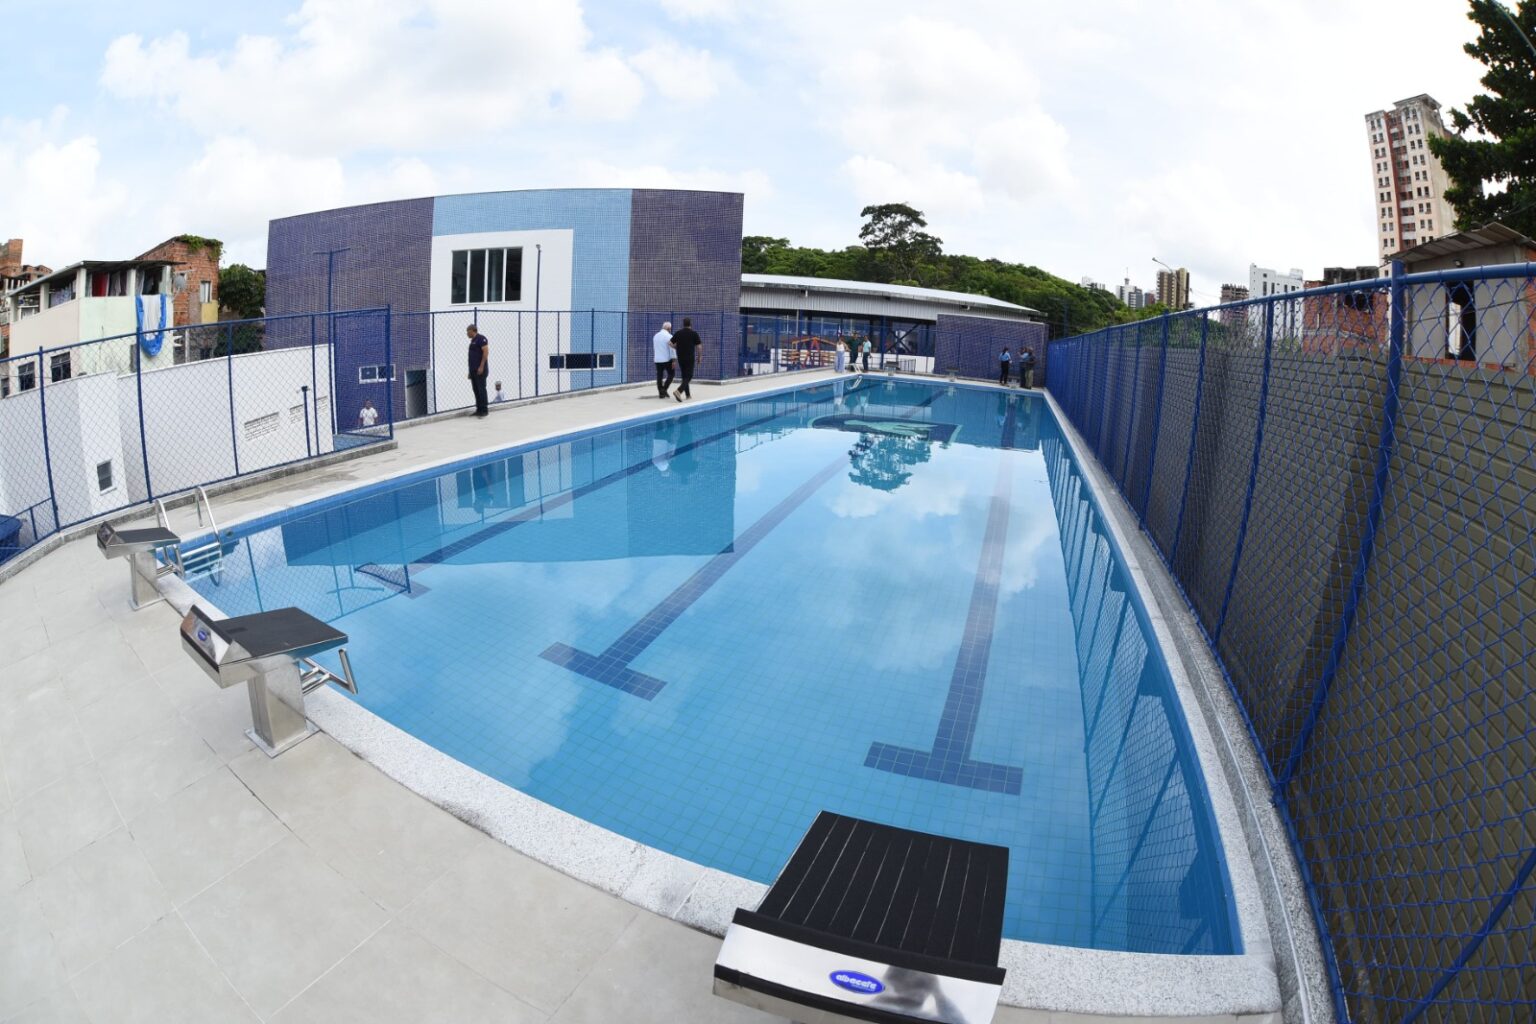 Capa: Prefeitura de Salvador entrega 1ª escola municipal com piscina semiolímpica